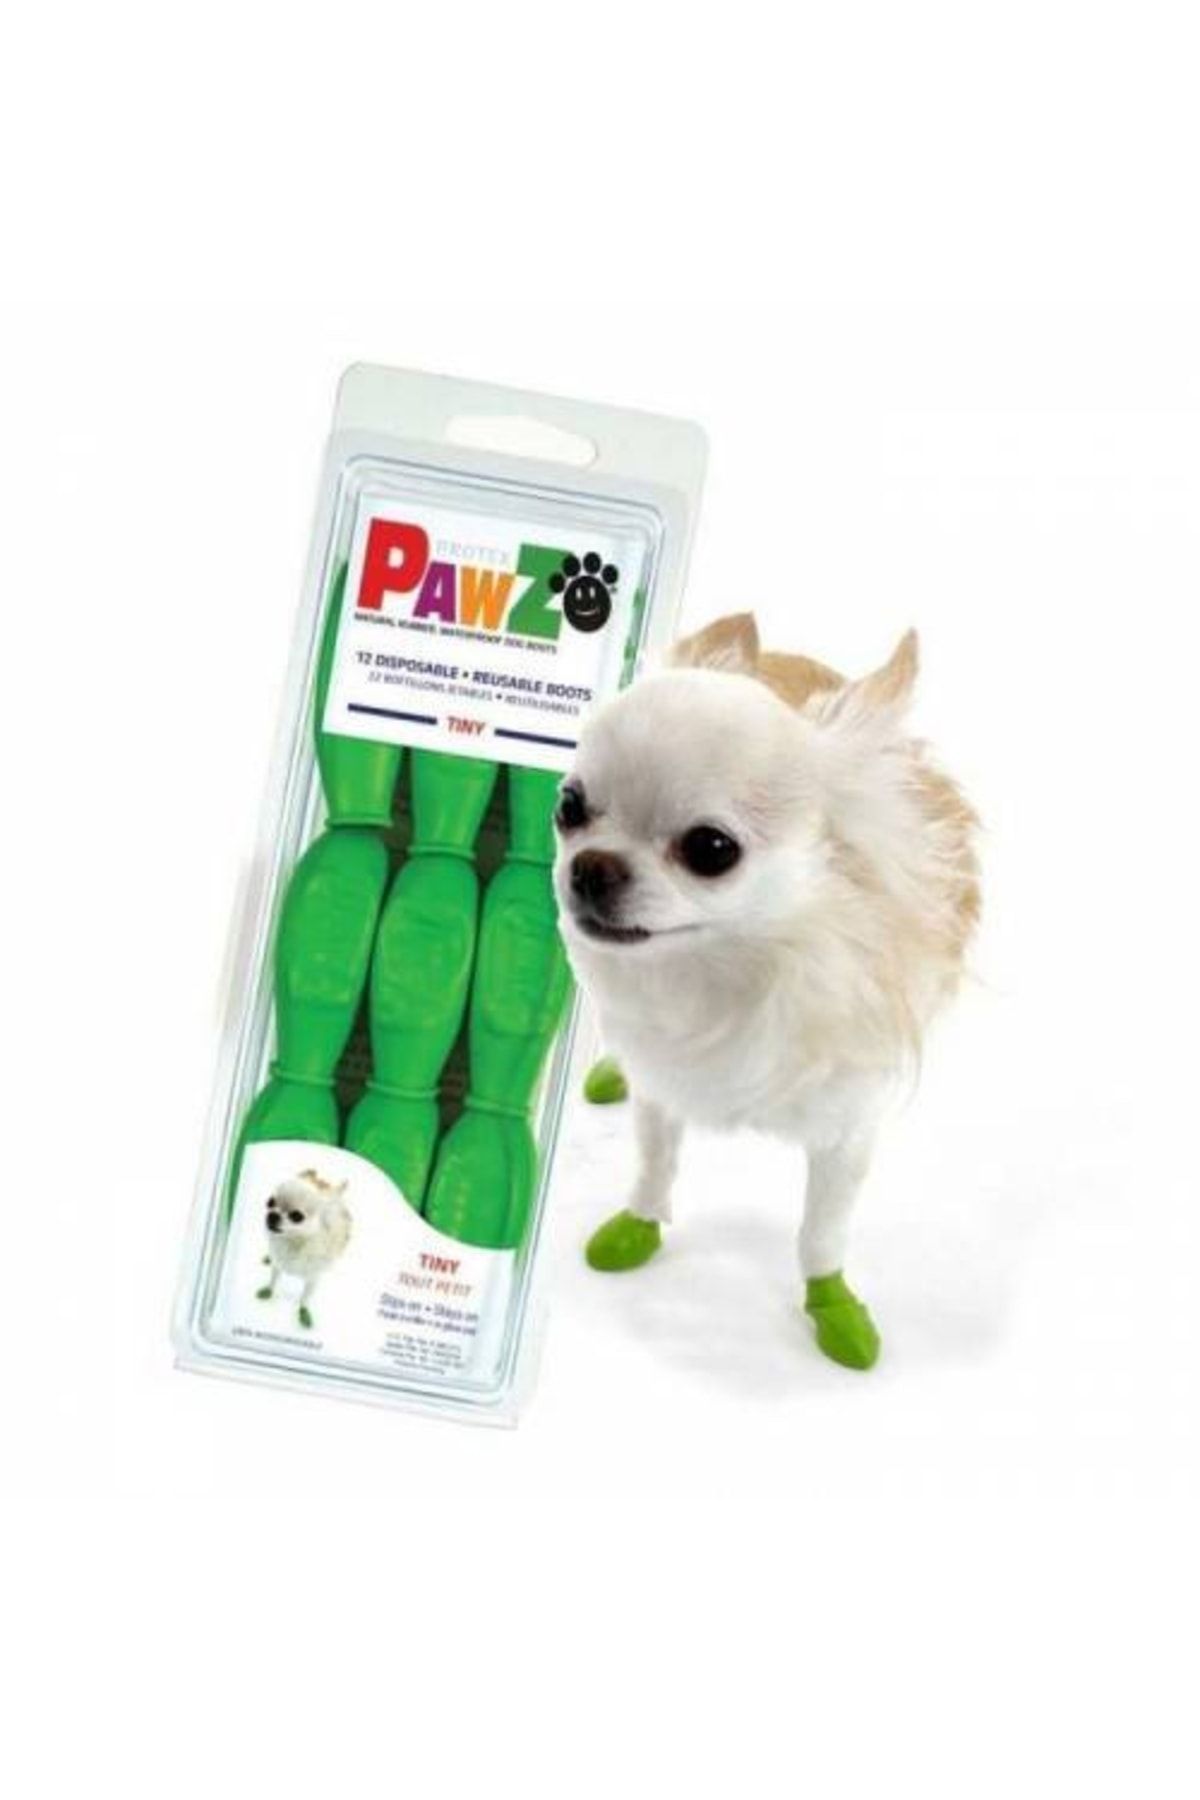 Pawz Boots Tiny Köpek Galoşu Apple Green